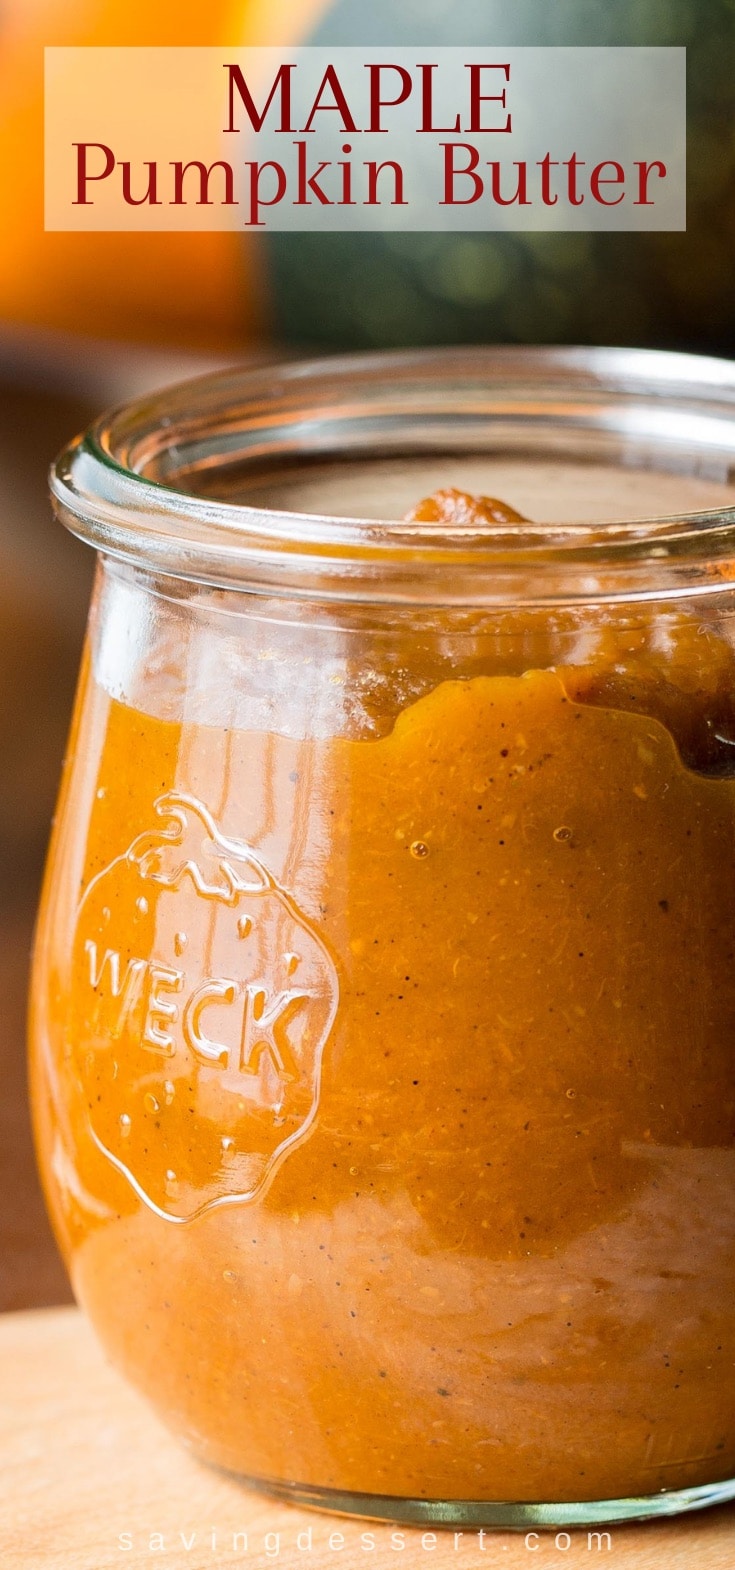 A closeup of a jar of pumpkin butter